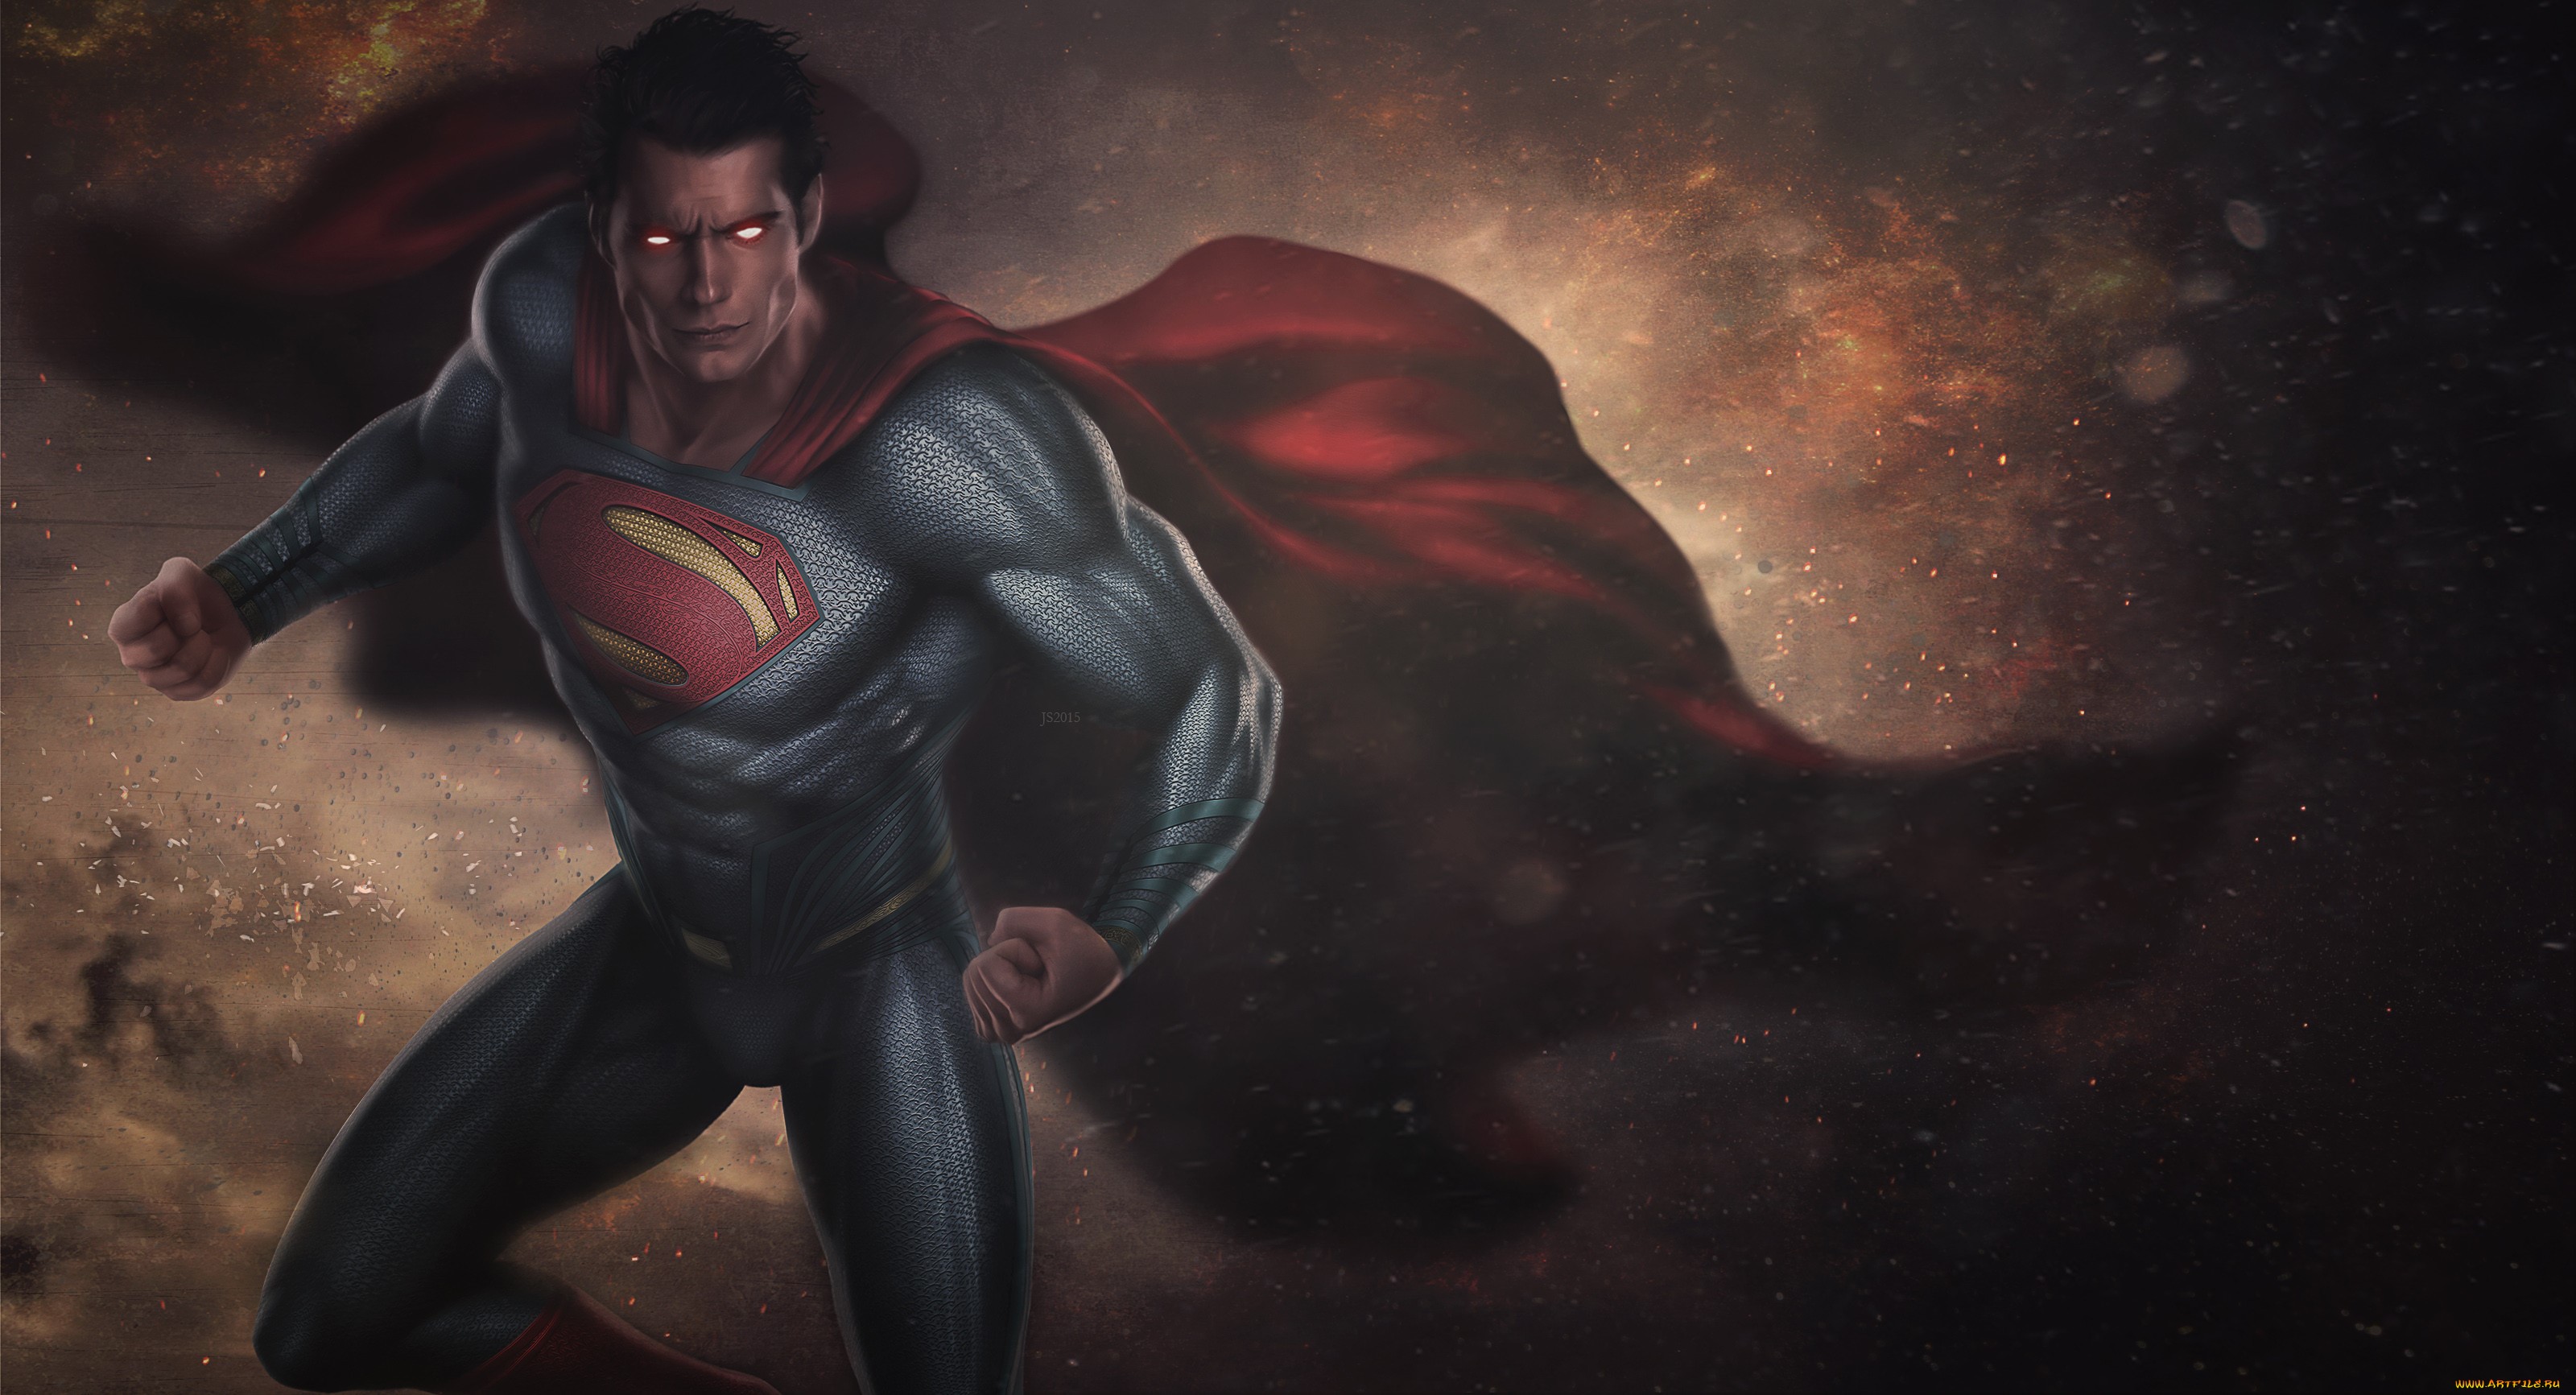 Glowing eyes cape muscles superman superhero artwork